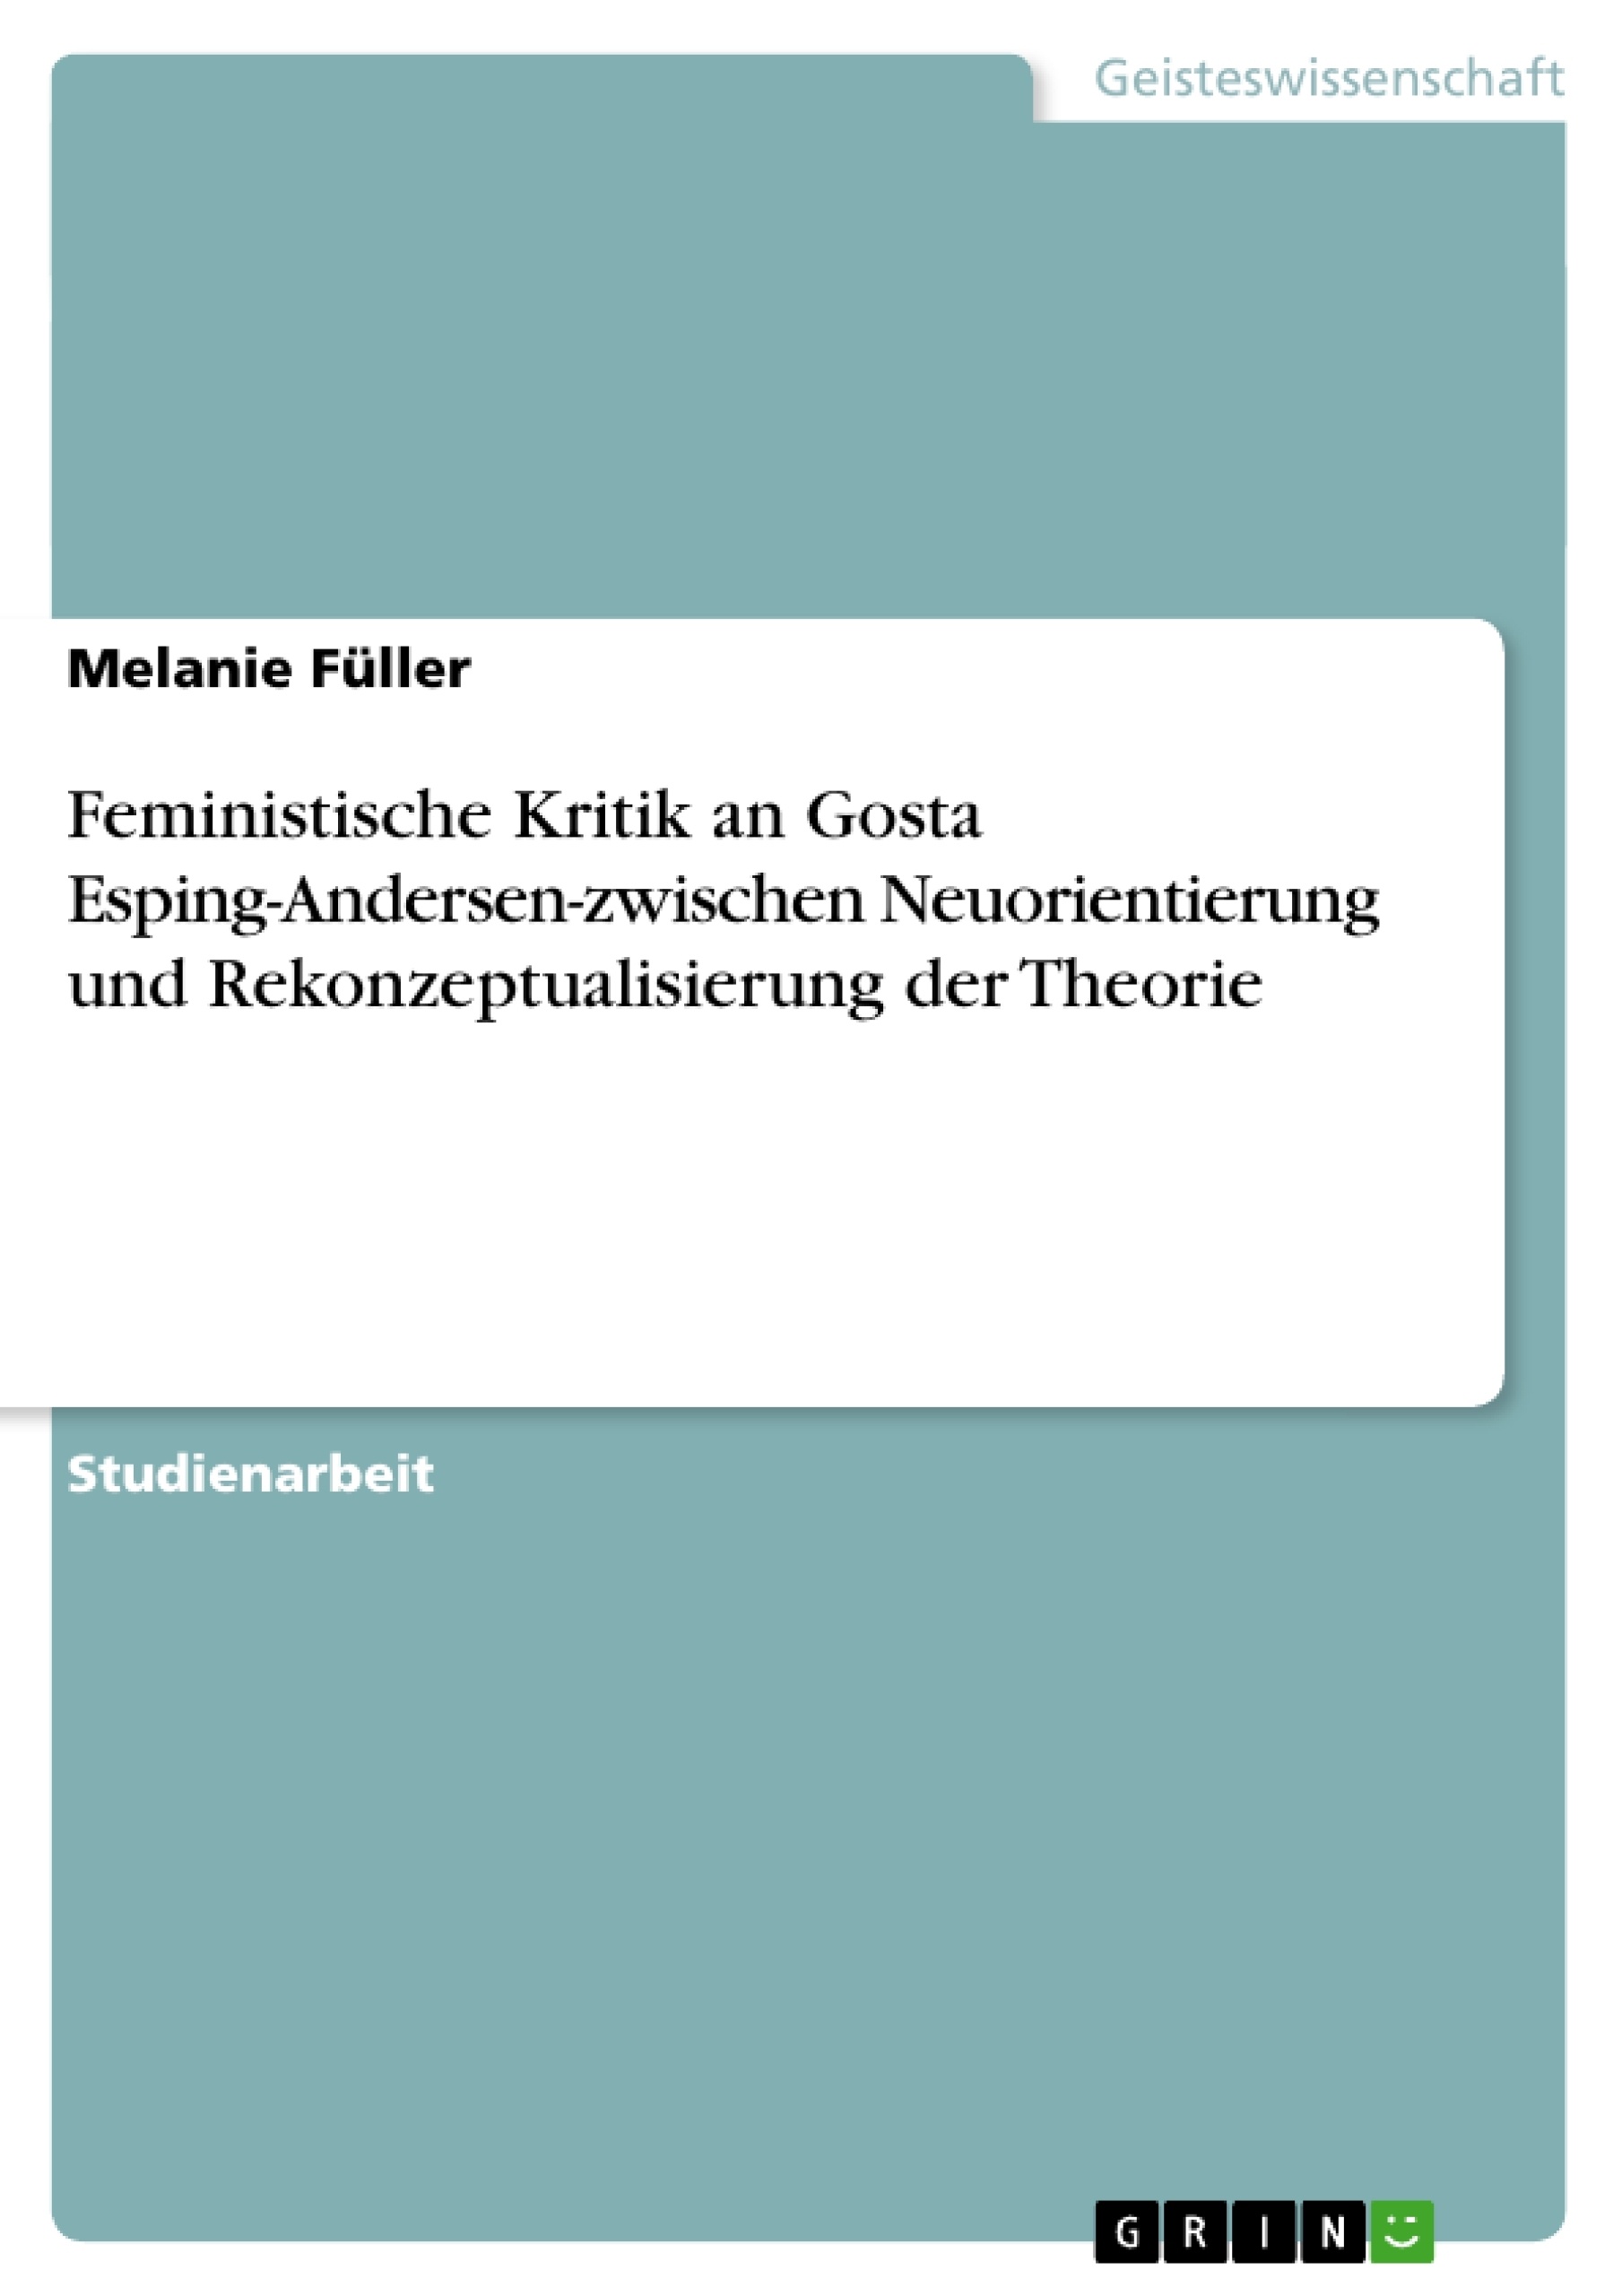 Título: Feministische Kritik an Gosta Esping-Andersen-zwischen Neuorientierung und Rekonzeptualisierung der Theorie